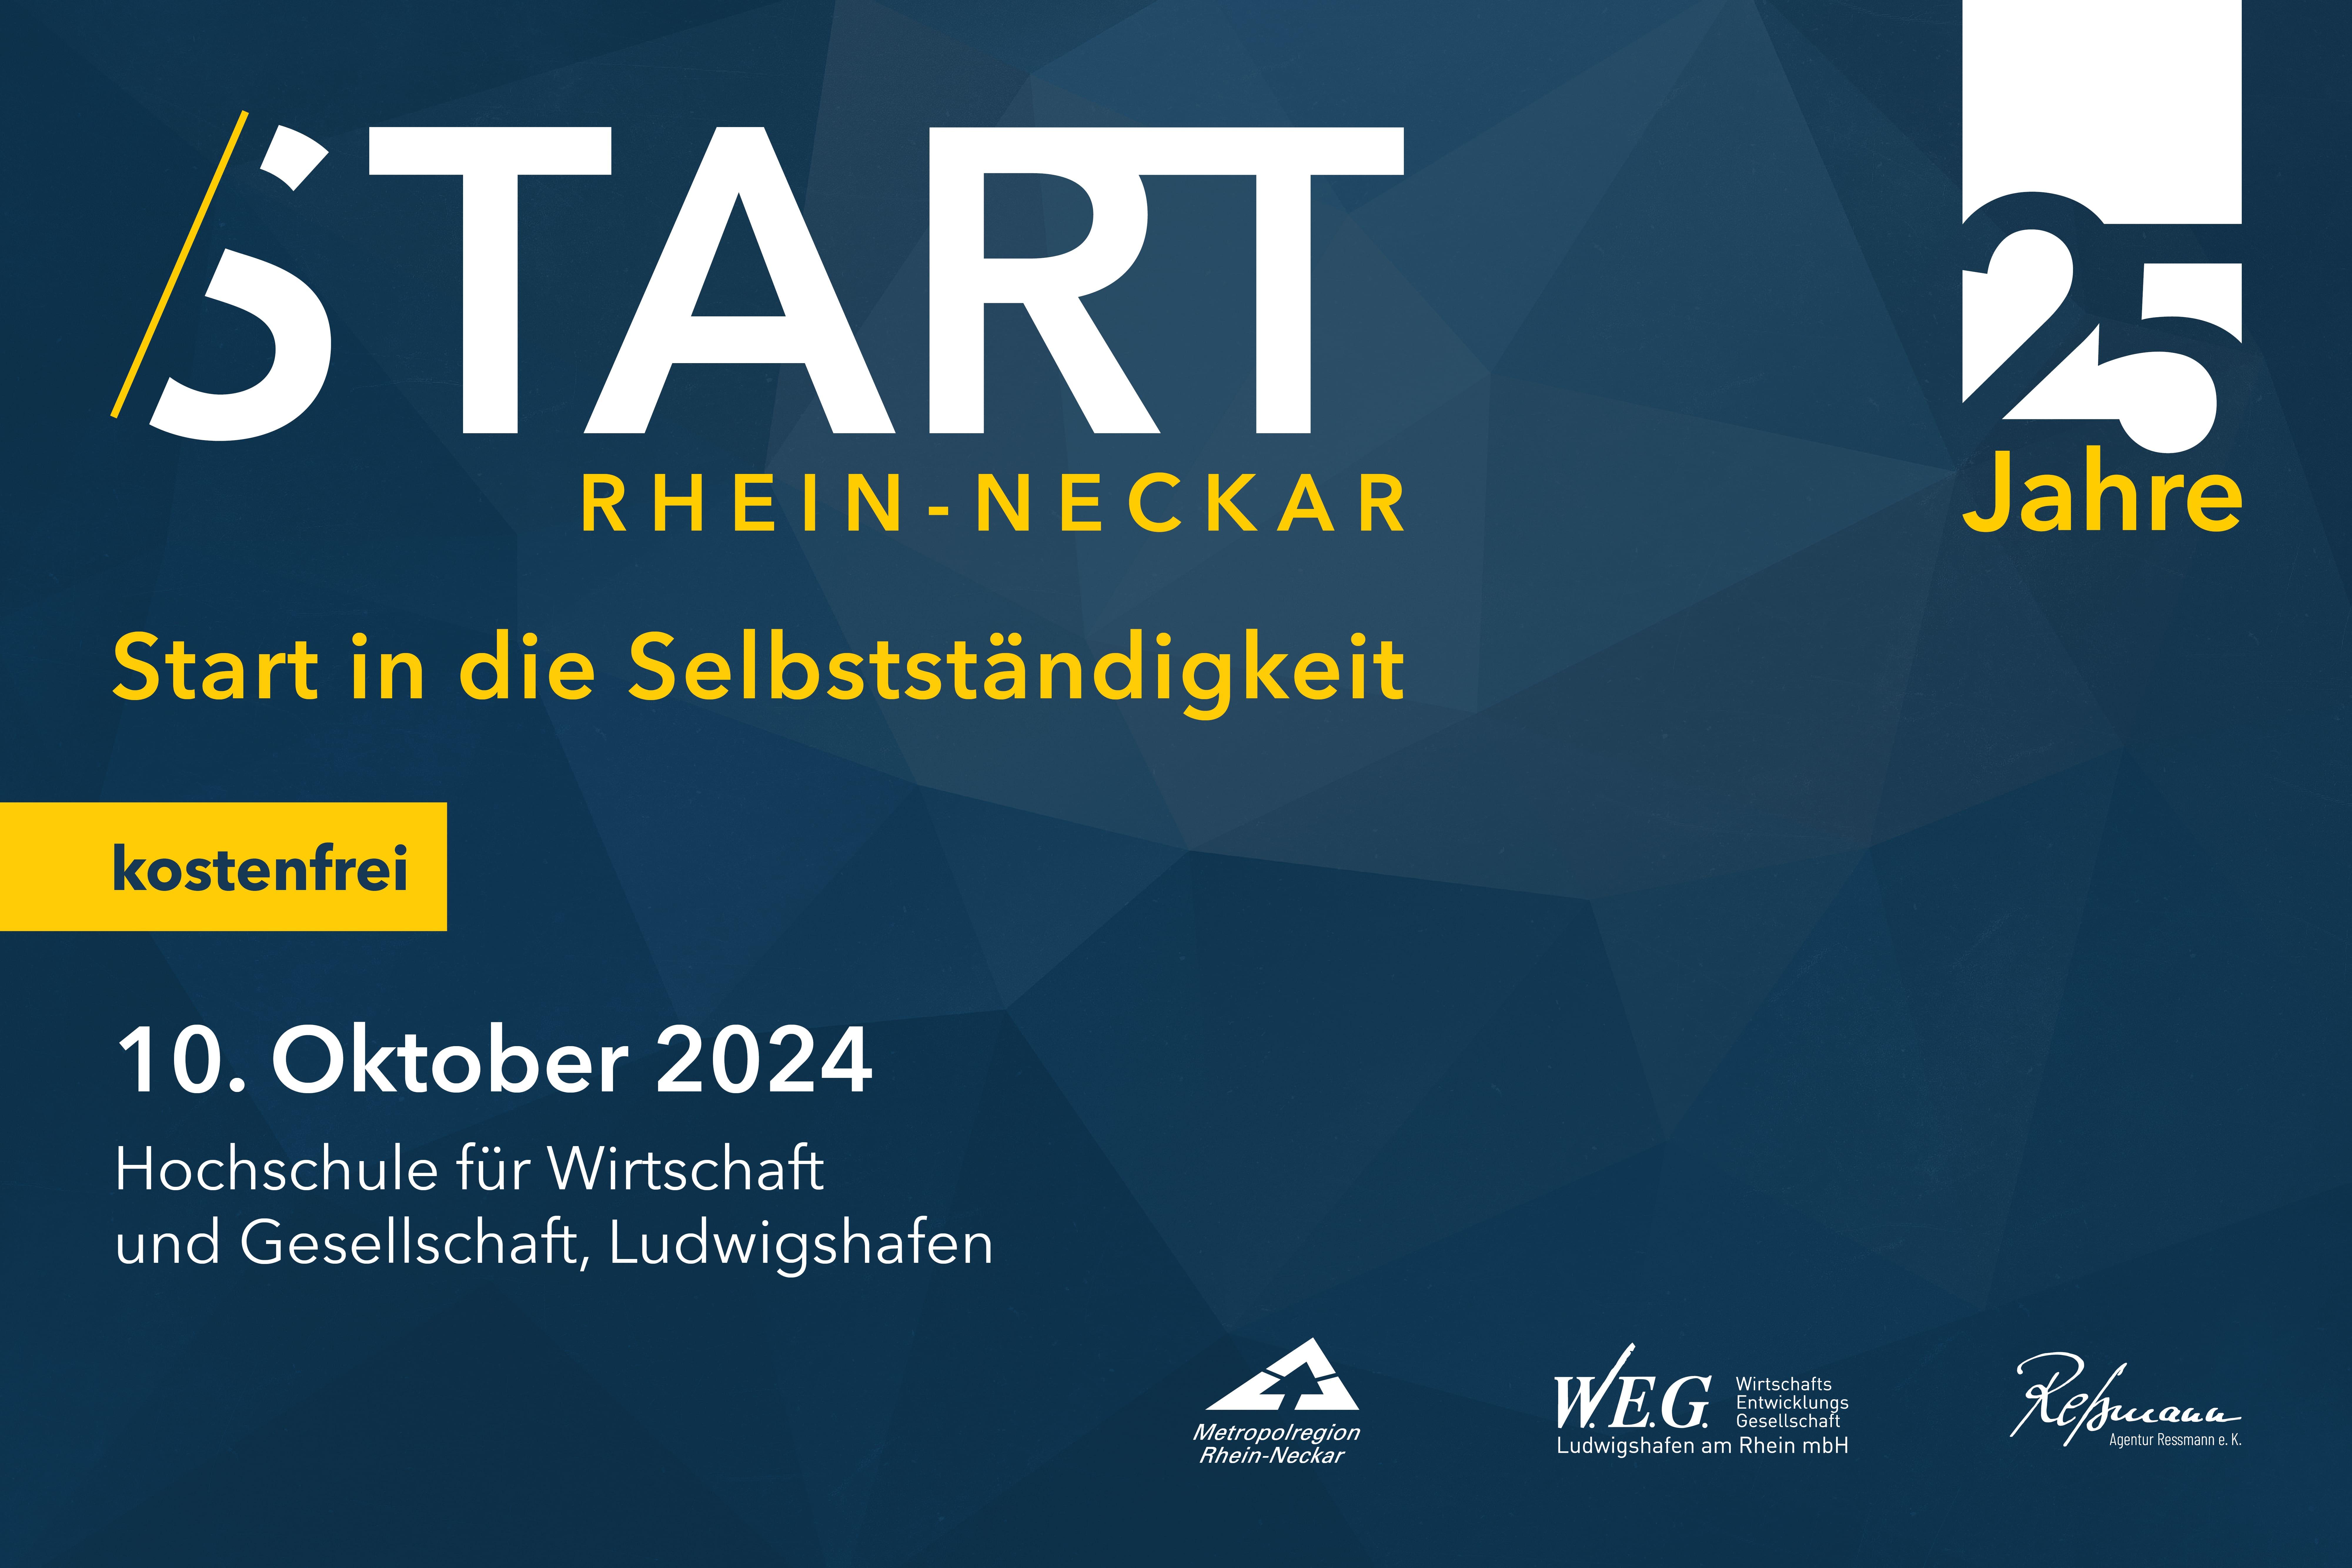 START Rhein-Neckar